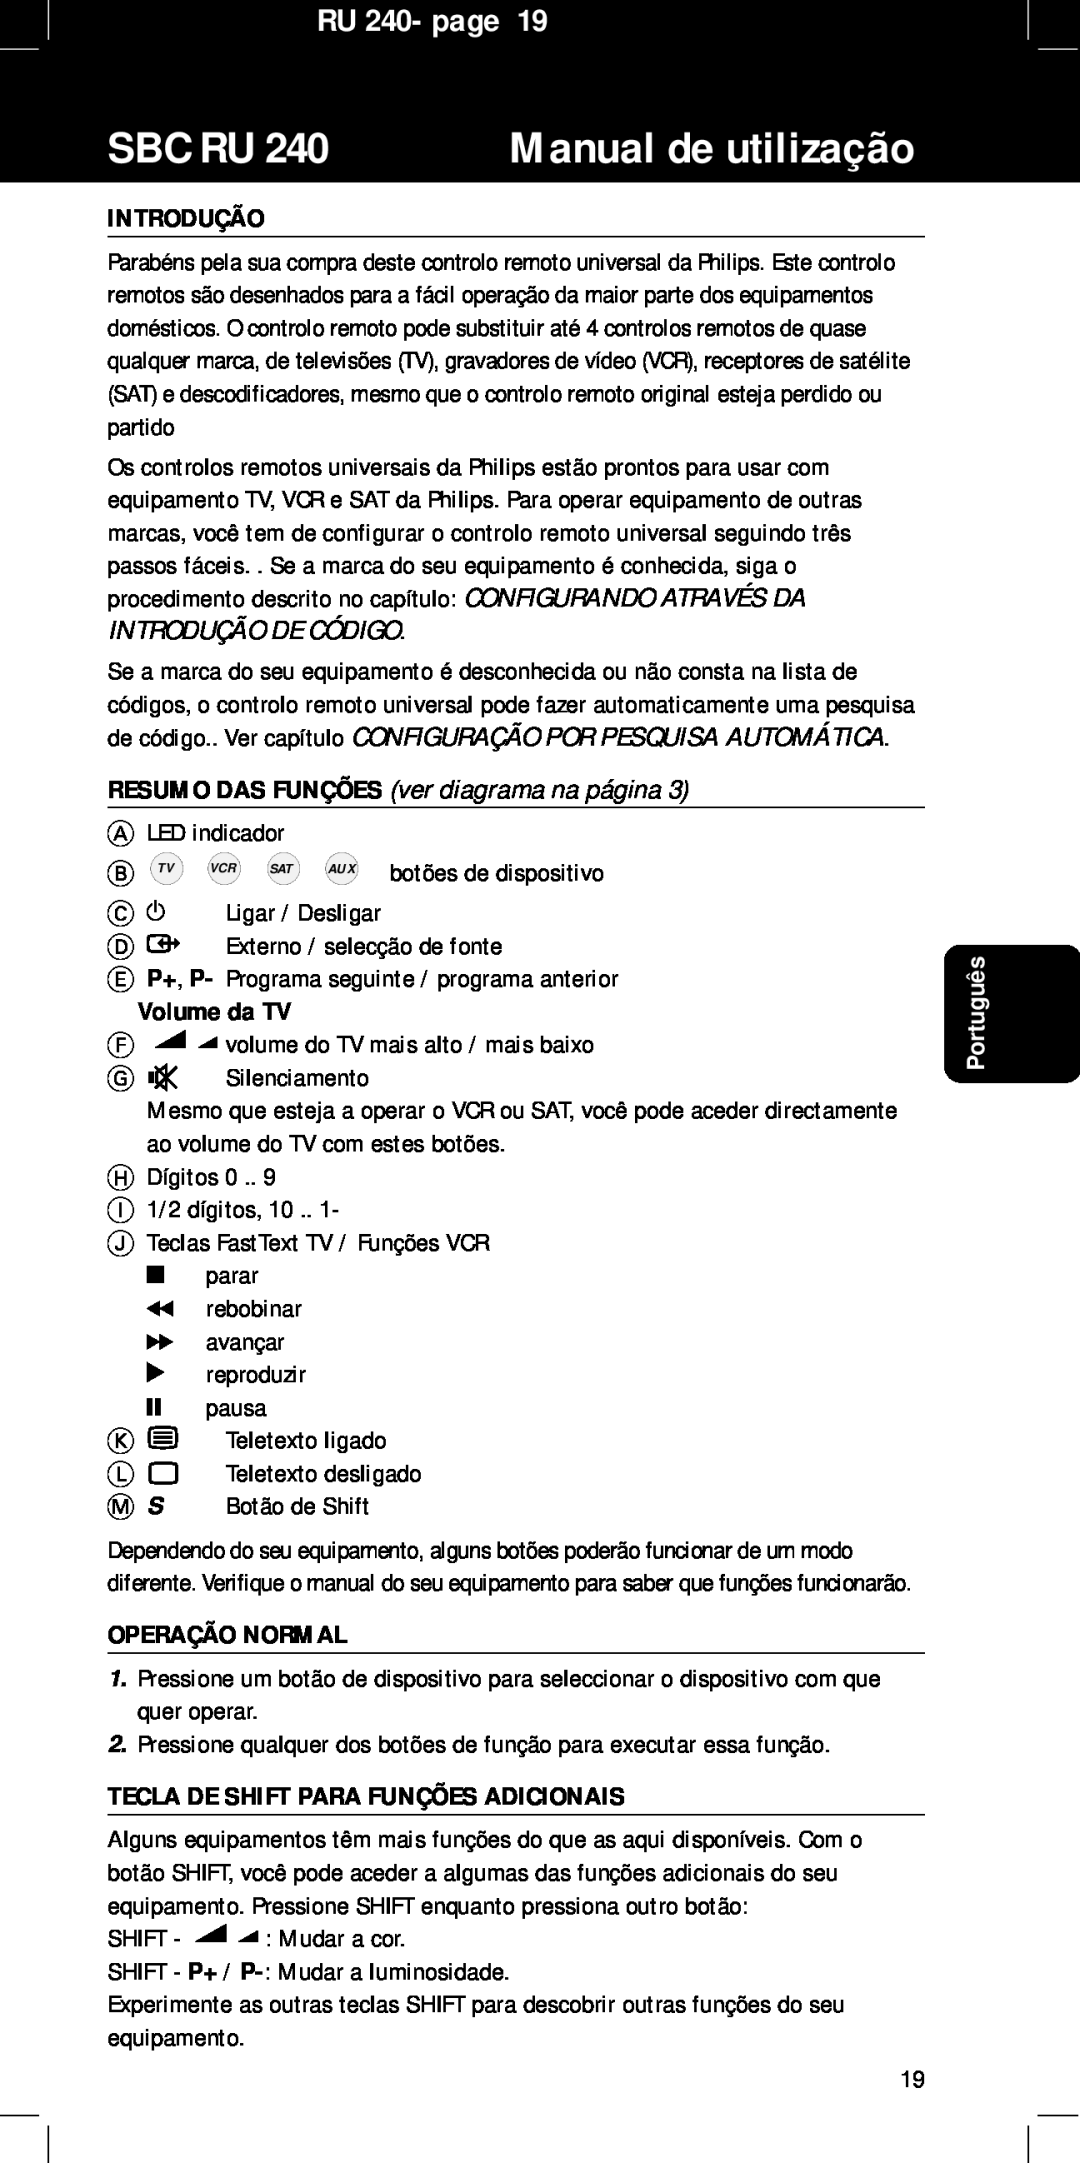 Philips SBC RU240/00U manual Manual de utilização, Sbc Ru, RU 240- page, Introdução, Volume da TV, Operação Normal 